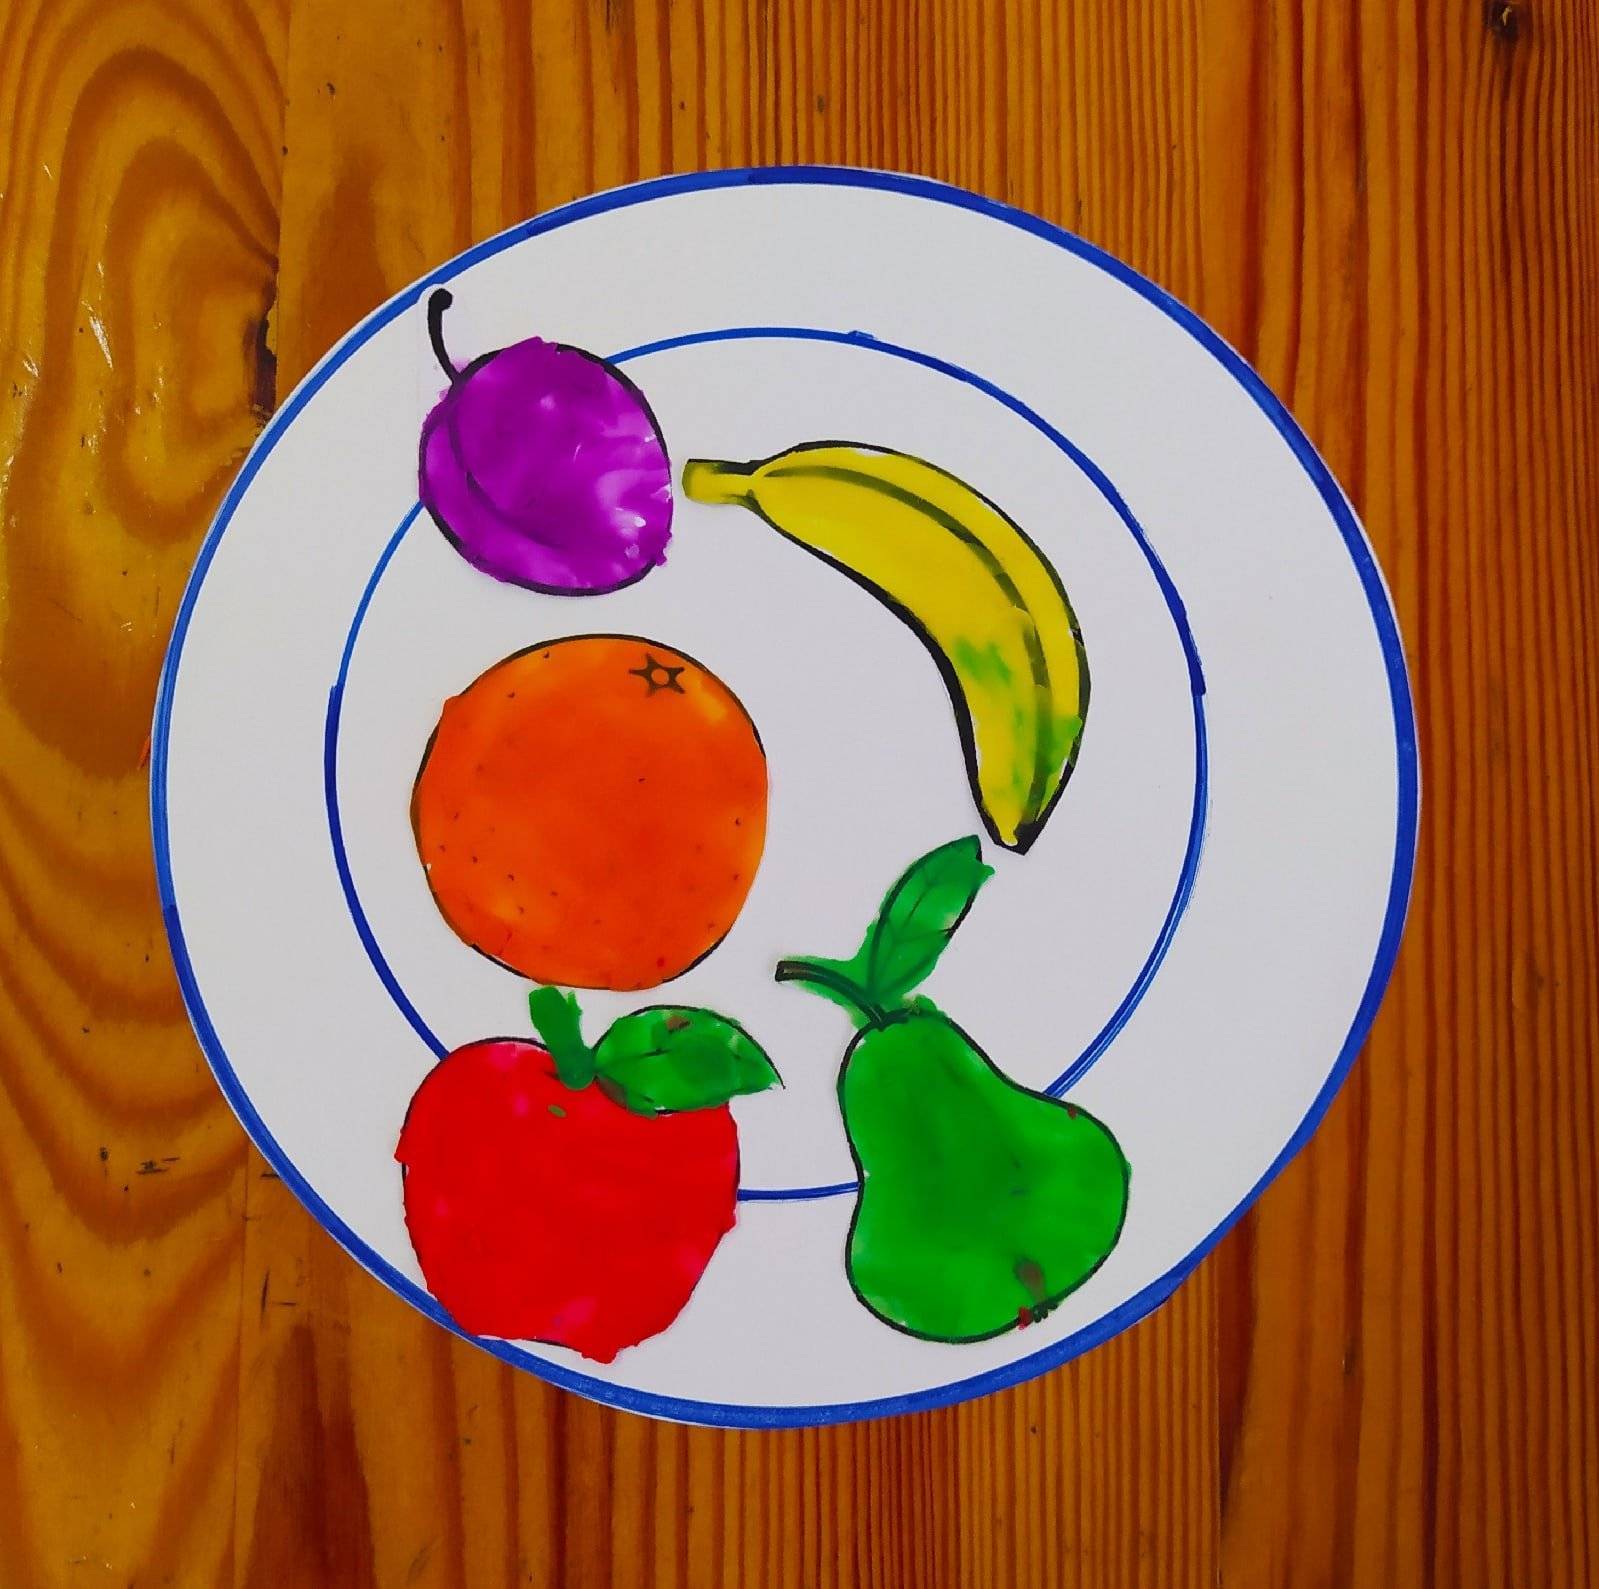 Аппликация фрукты из пластилина, кругов и обрывков бумаги в разных техниках